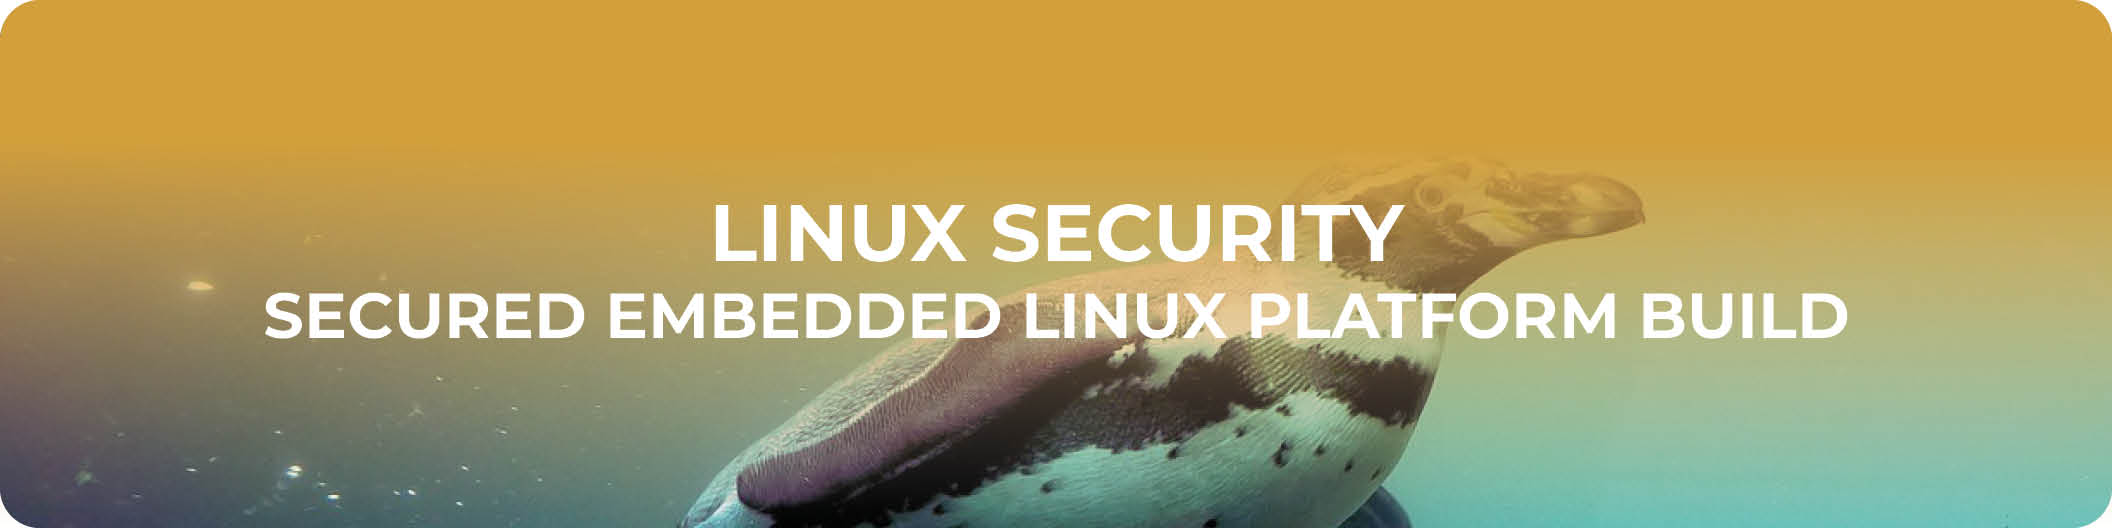 Linux Security - Secured Embedded Linux Platform Build